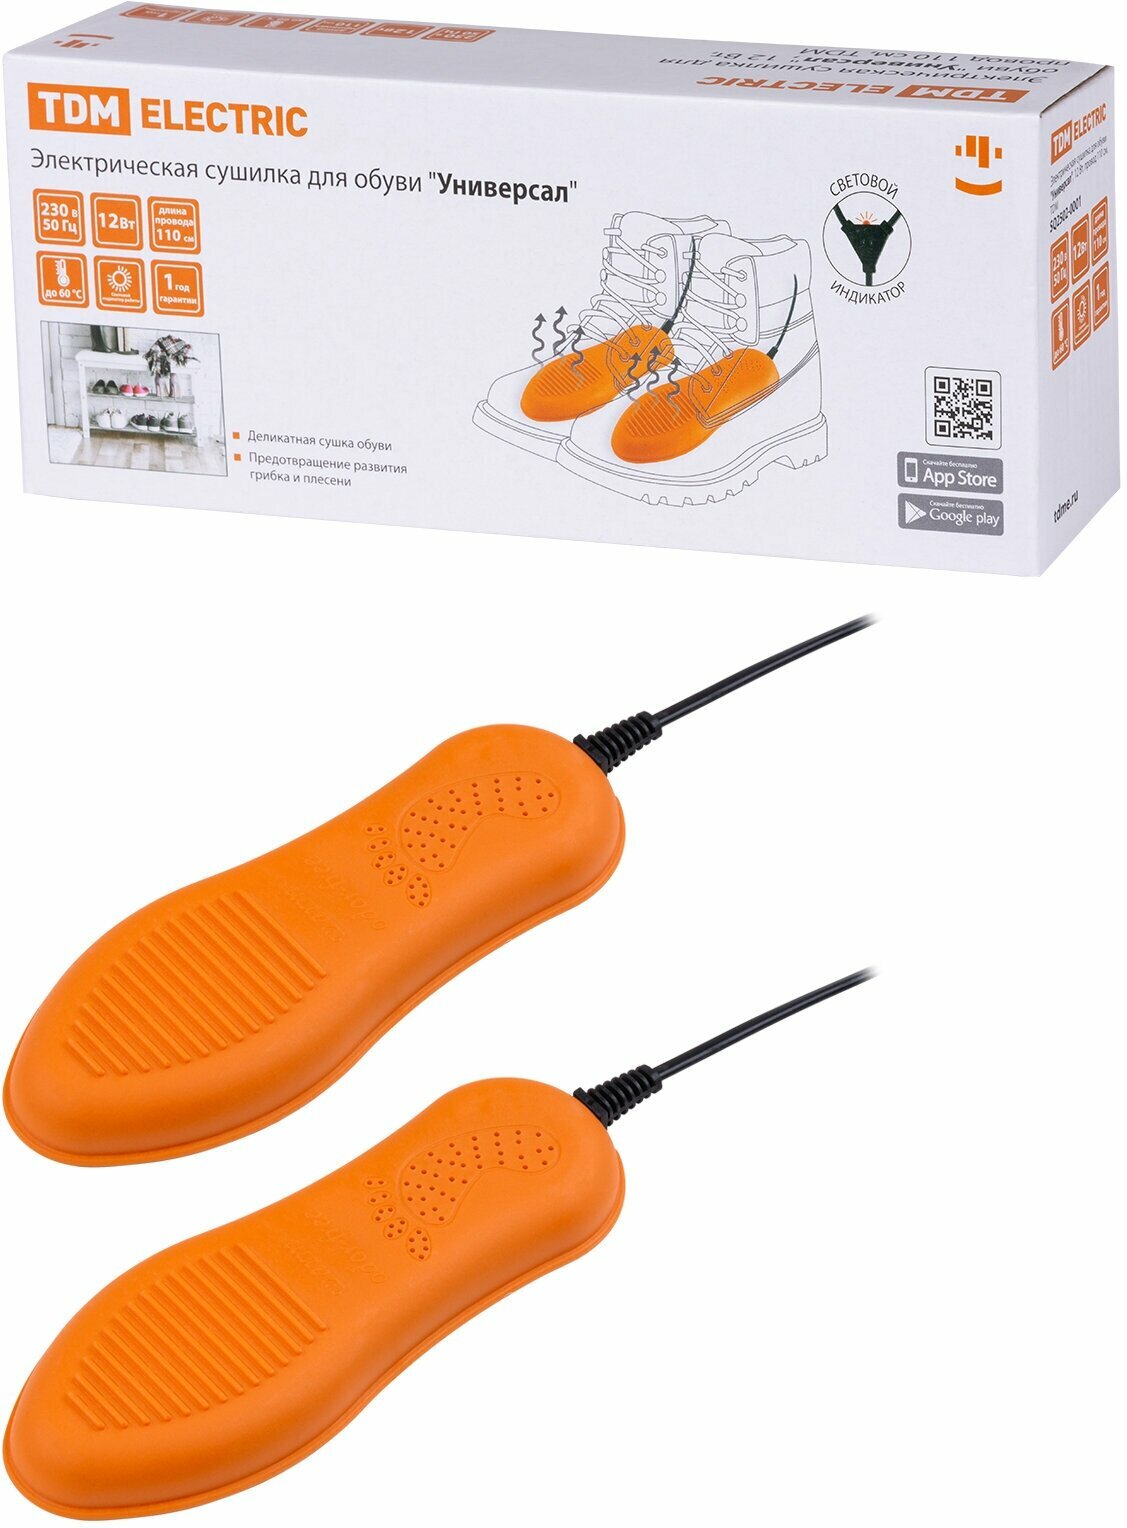 Сушилка для обуви TDM ELECTRIC Универсал SQ2502-0001 оранжевый